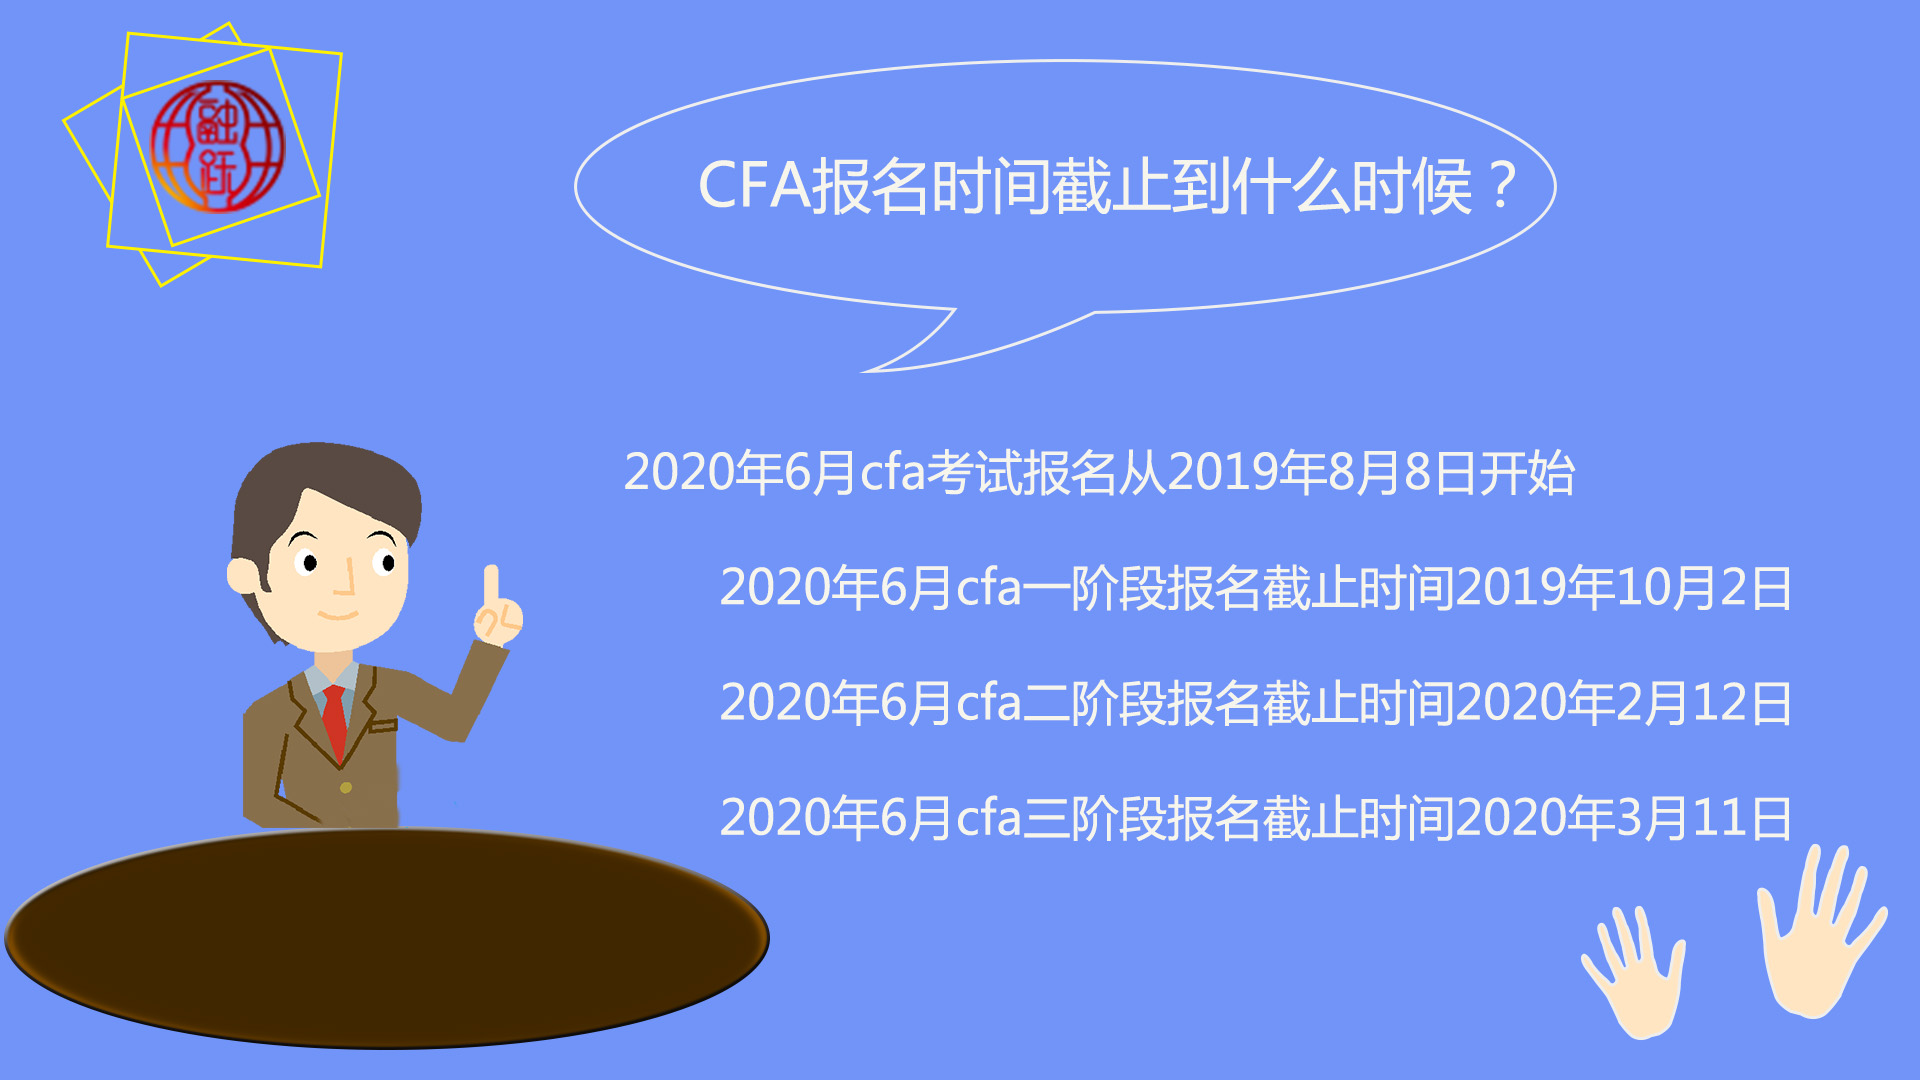 2020年6月CFA考试报名时间真的是截止到2020年3月11日吗？